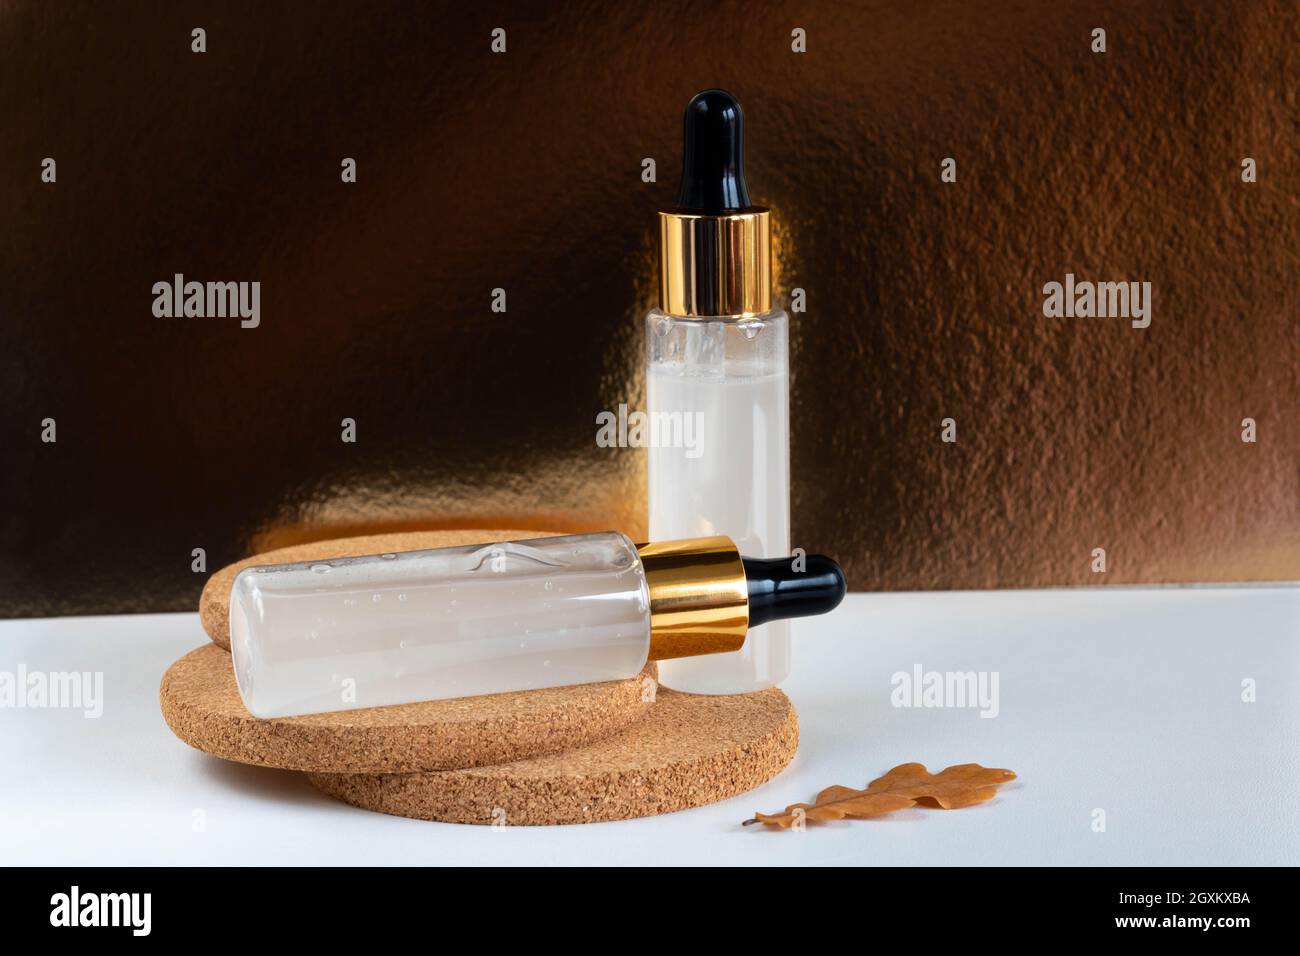 Auf einem weißen Tisch stehen zwei Milchflaschen mit einer Augenzange, isoliert auf einem goldenen Hintergrund auf Kork. Das Layout ist für das Design von Kosmetika geeignet. Stockfoto